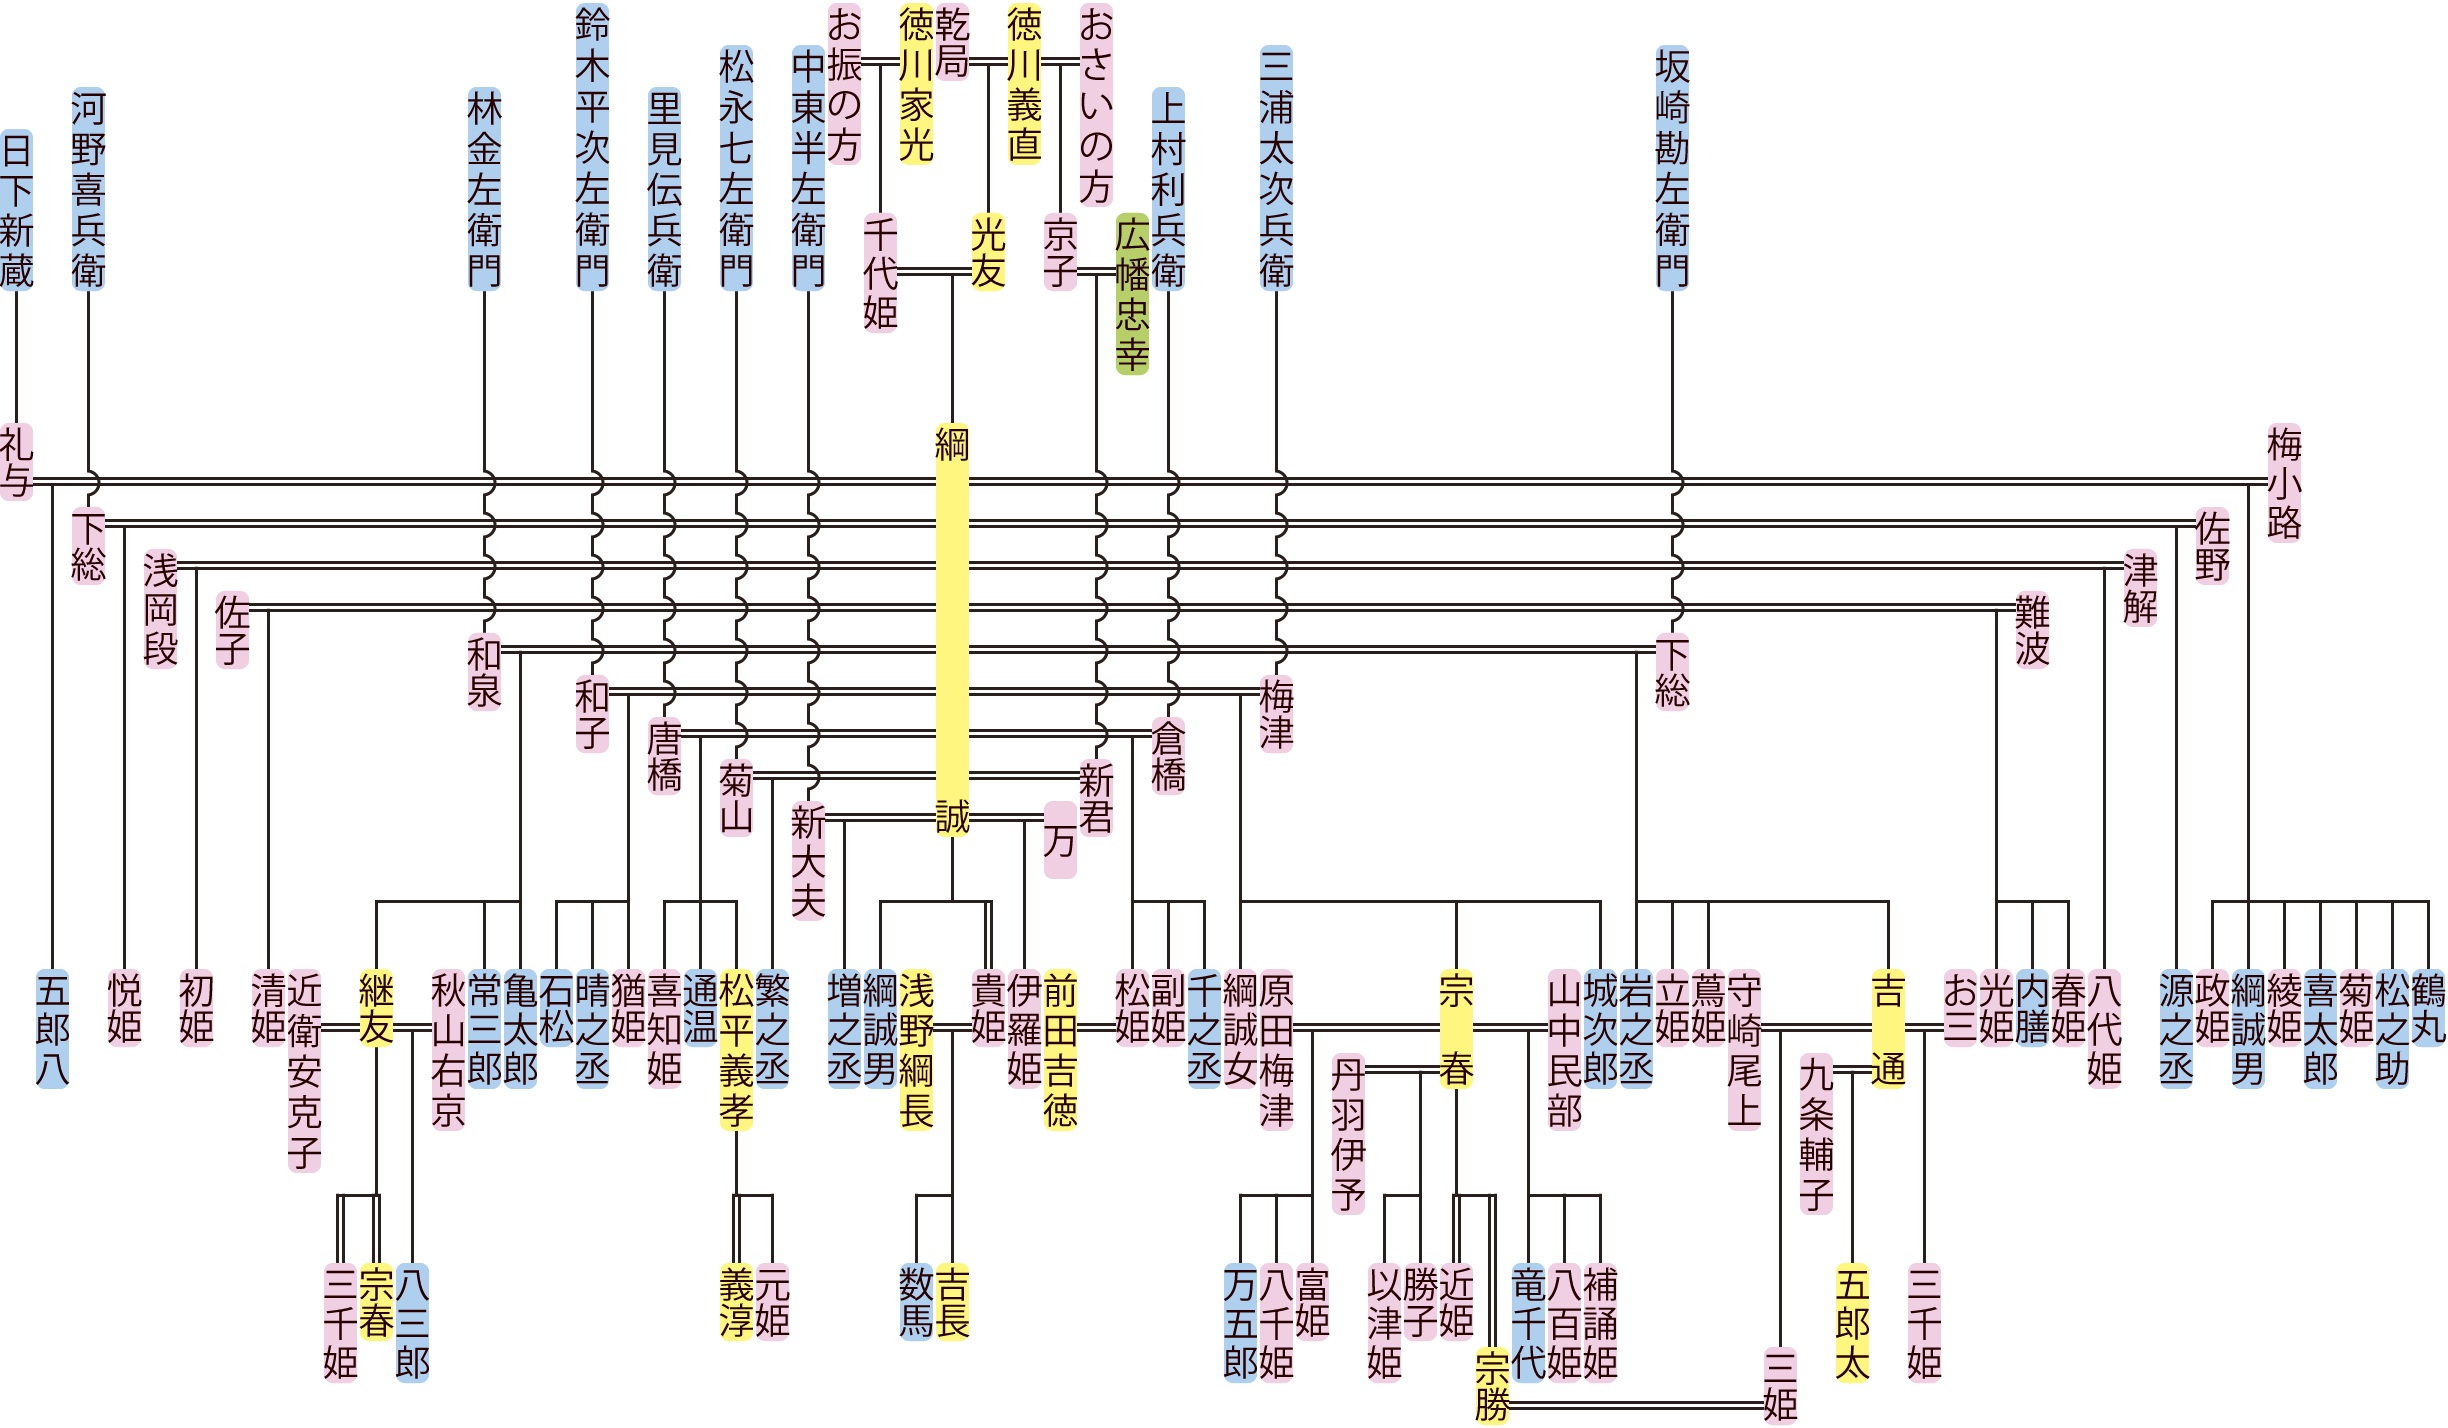 徳川綱誠の系図